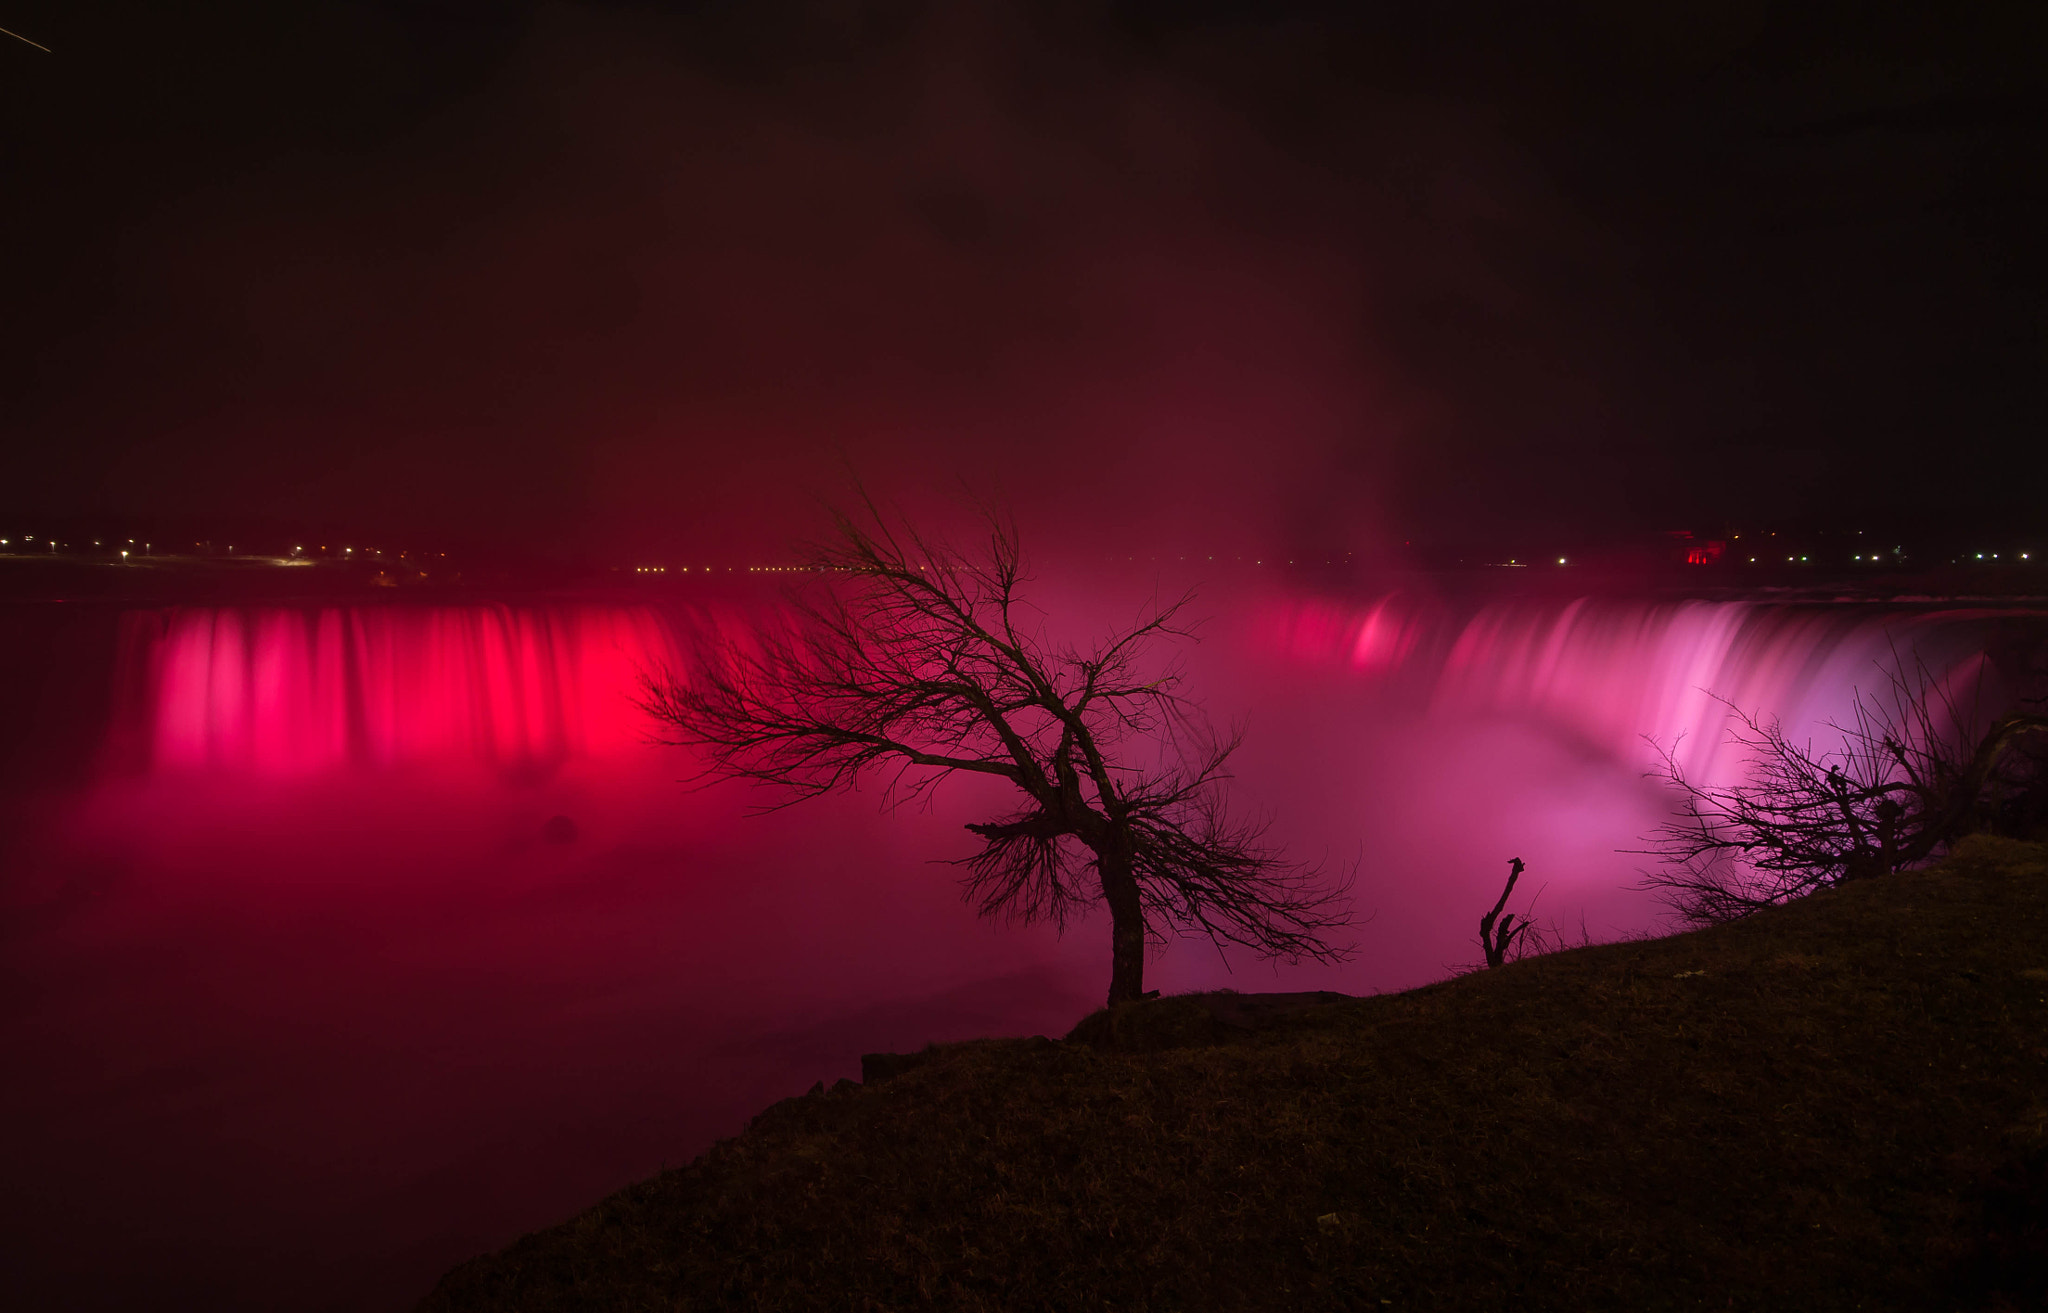 Nikon D3100 sample photo. Niagara falls at night photography